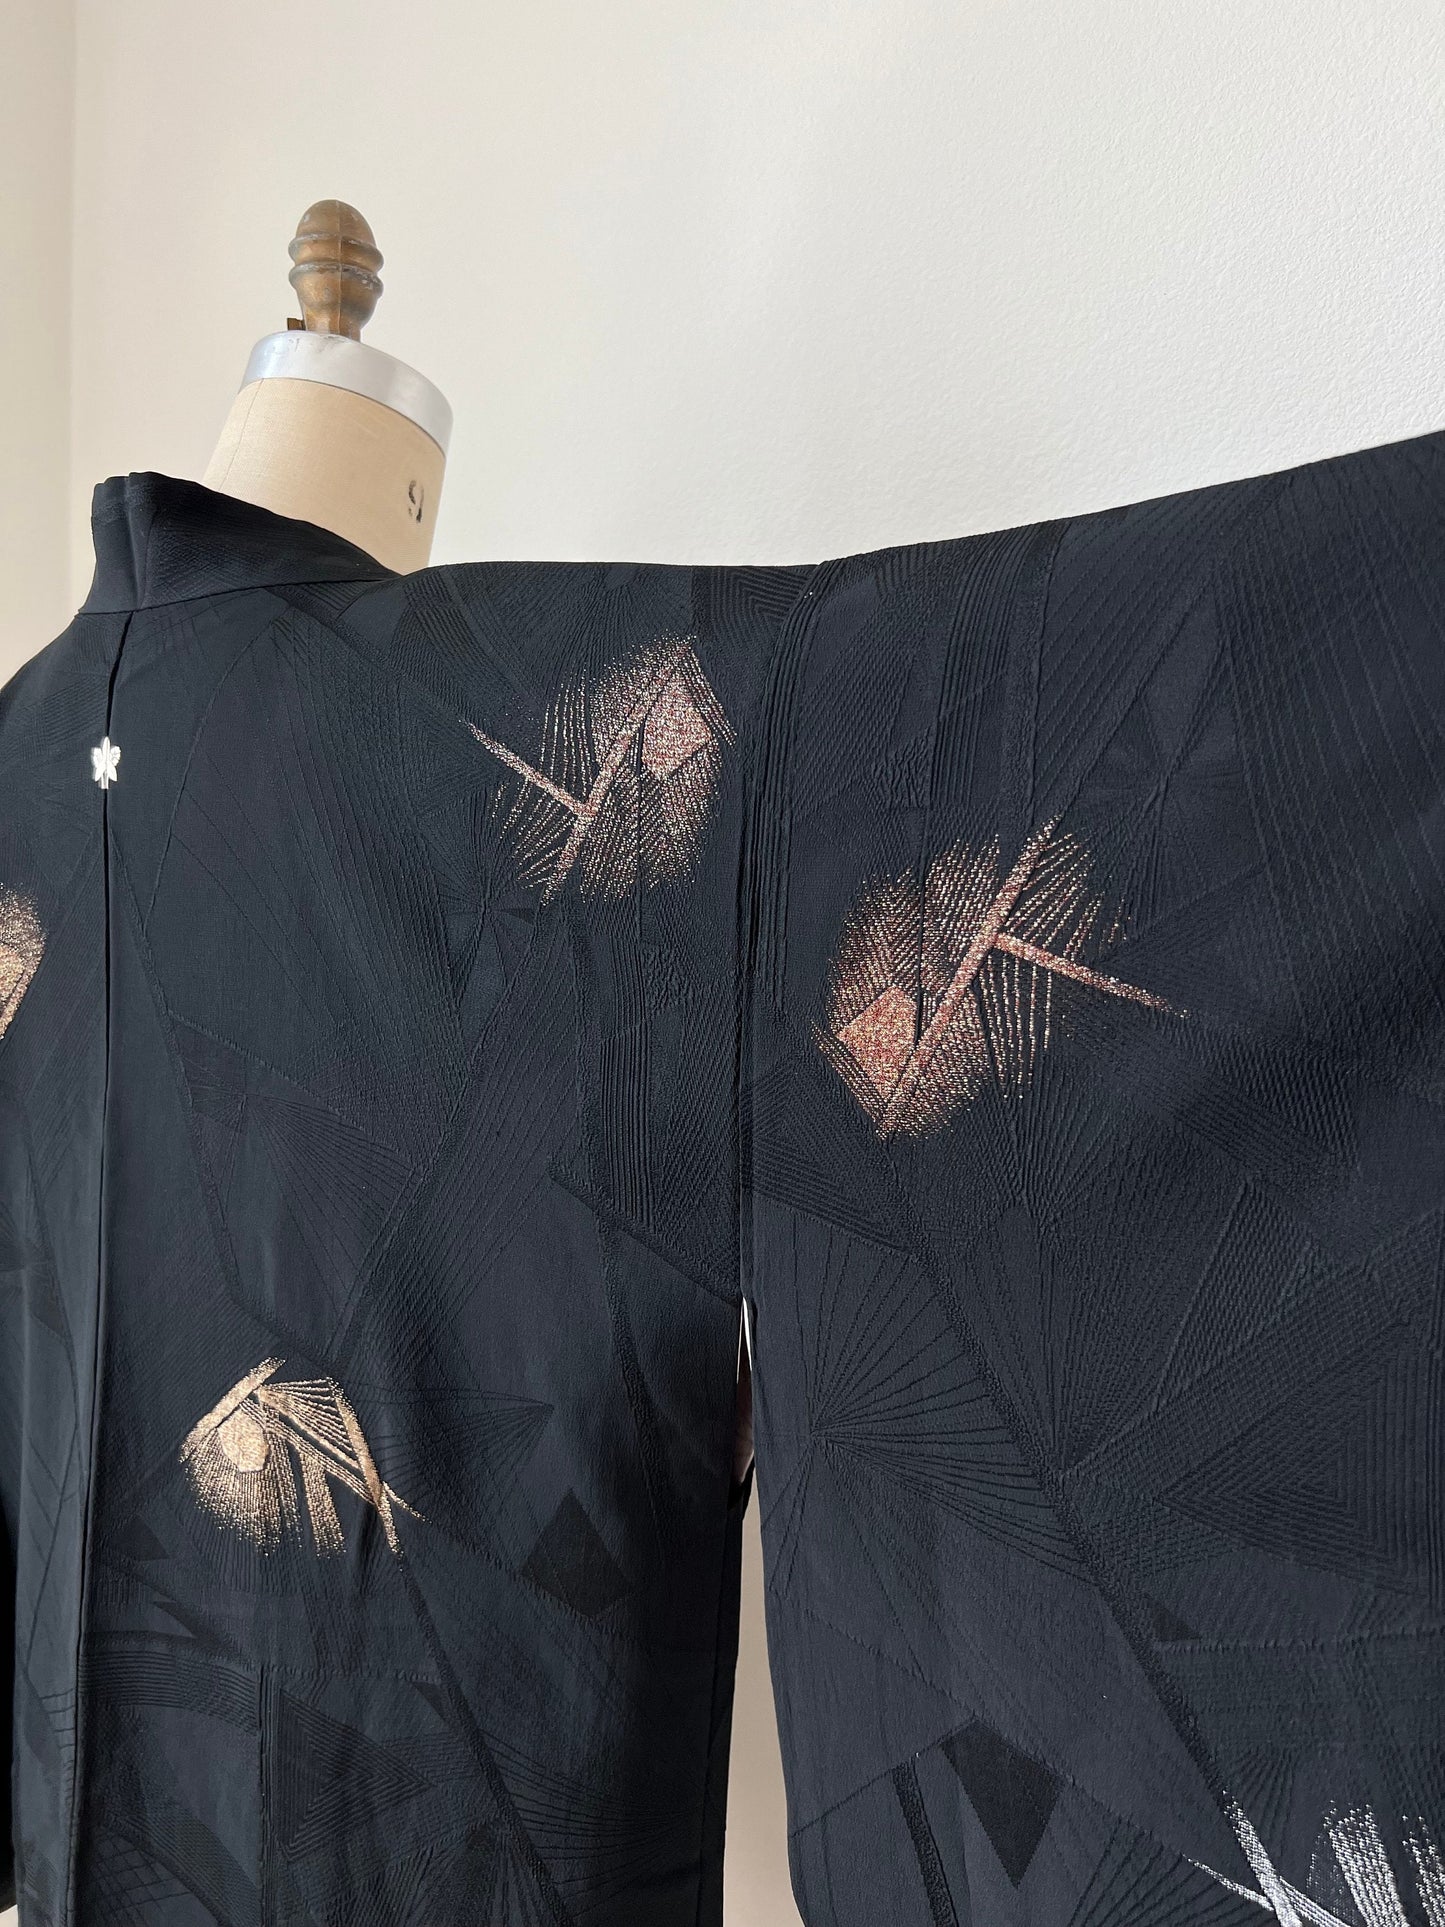 Back image, antique Japanese black kimono sleeve